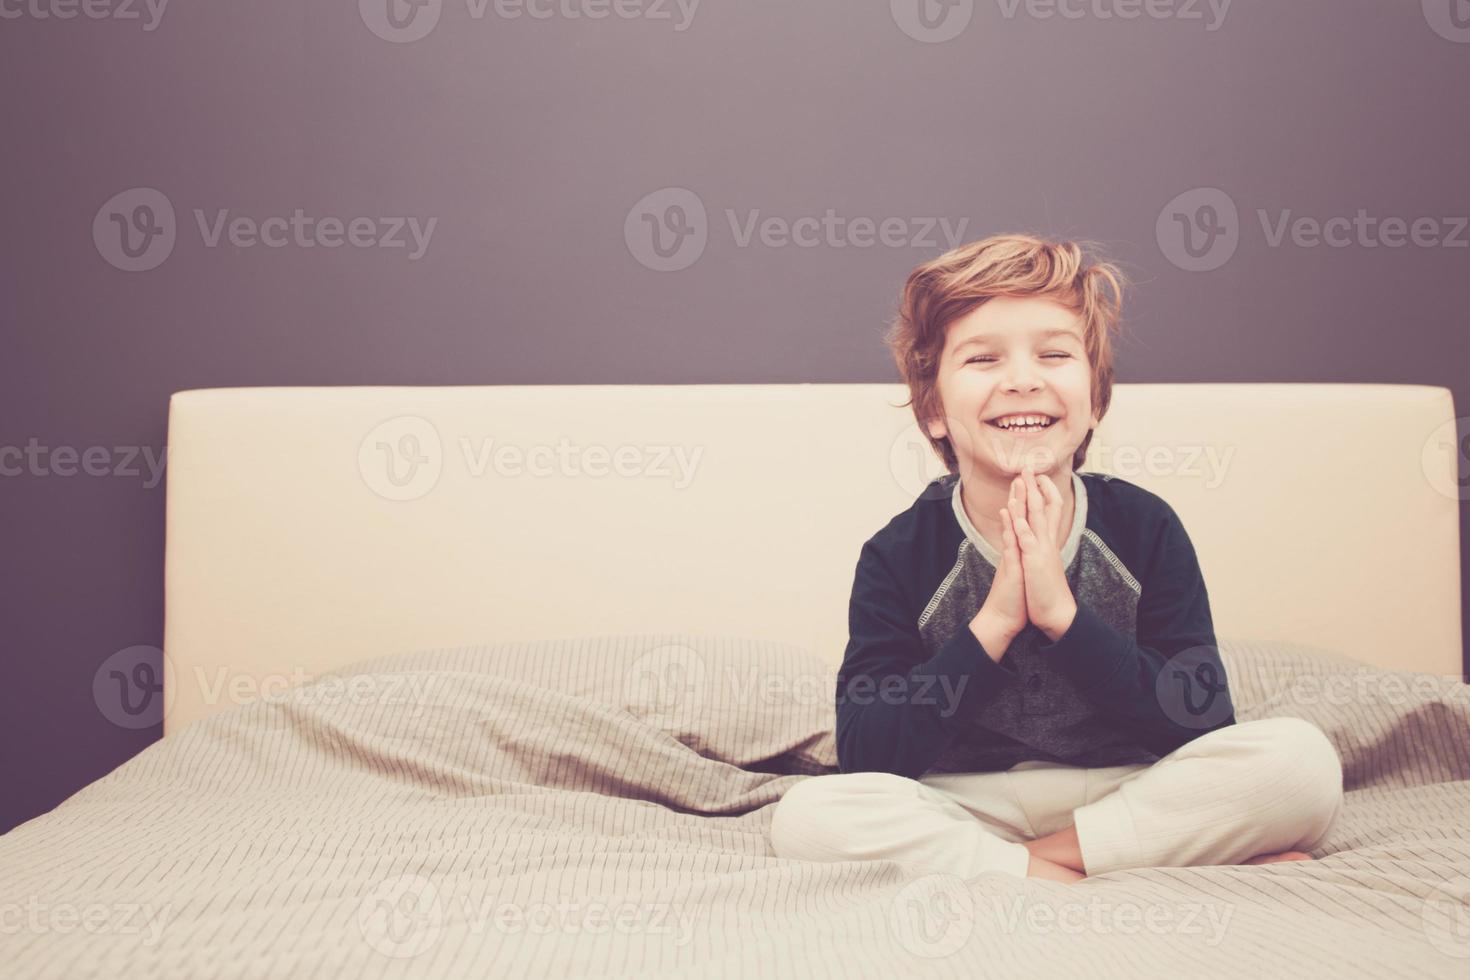 enfant heureux dans la pose de namaste pratiquant le yoga sur le lit. photo